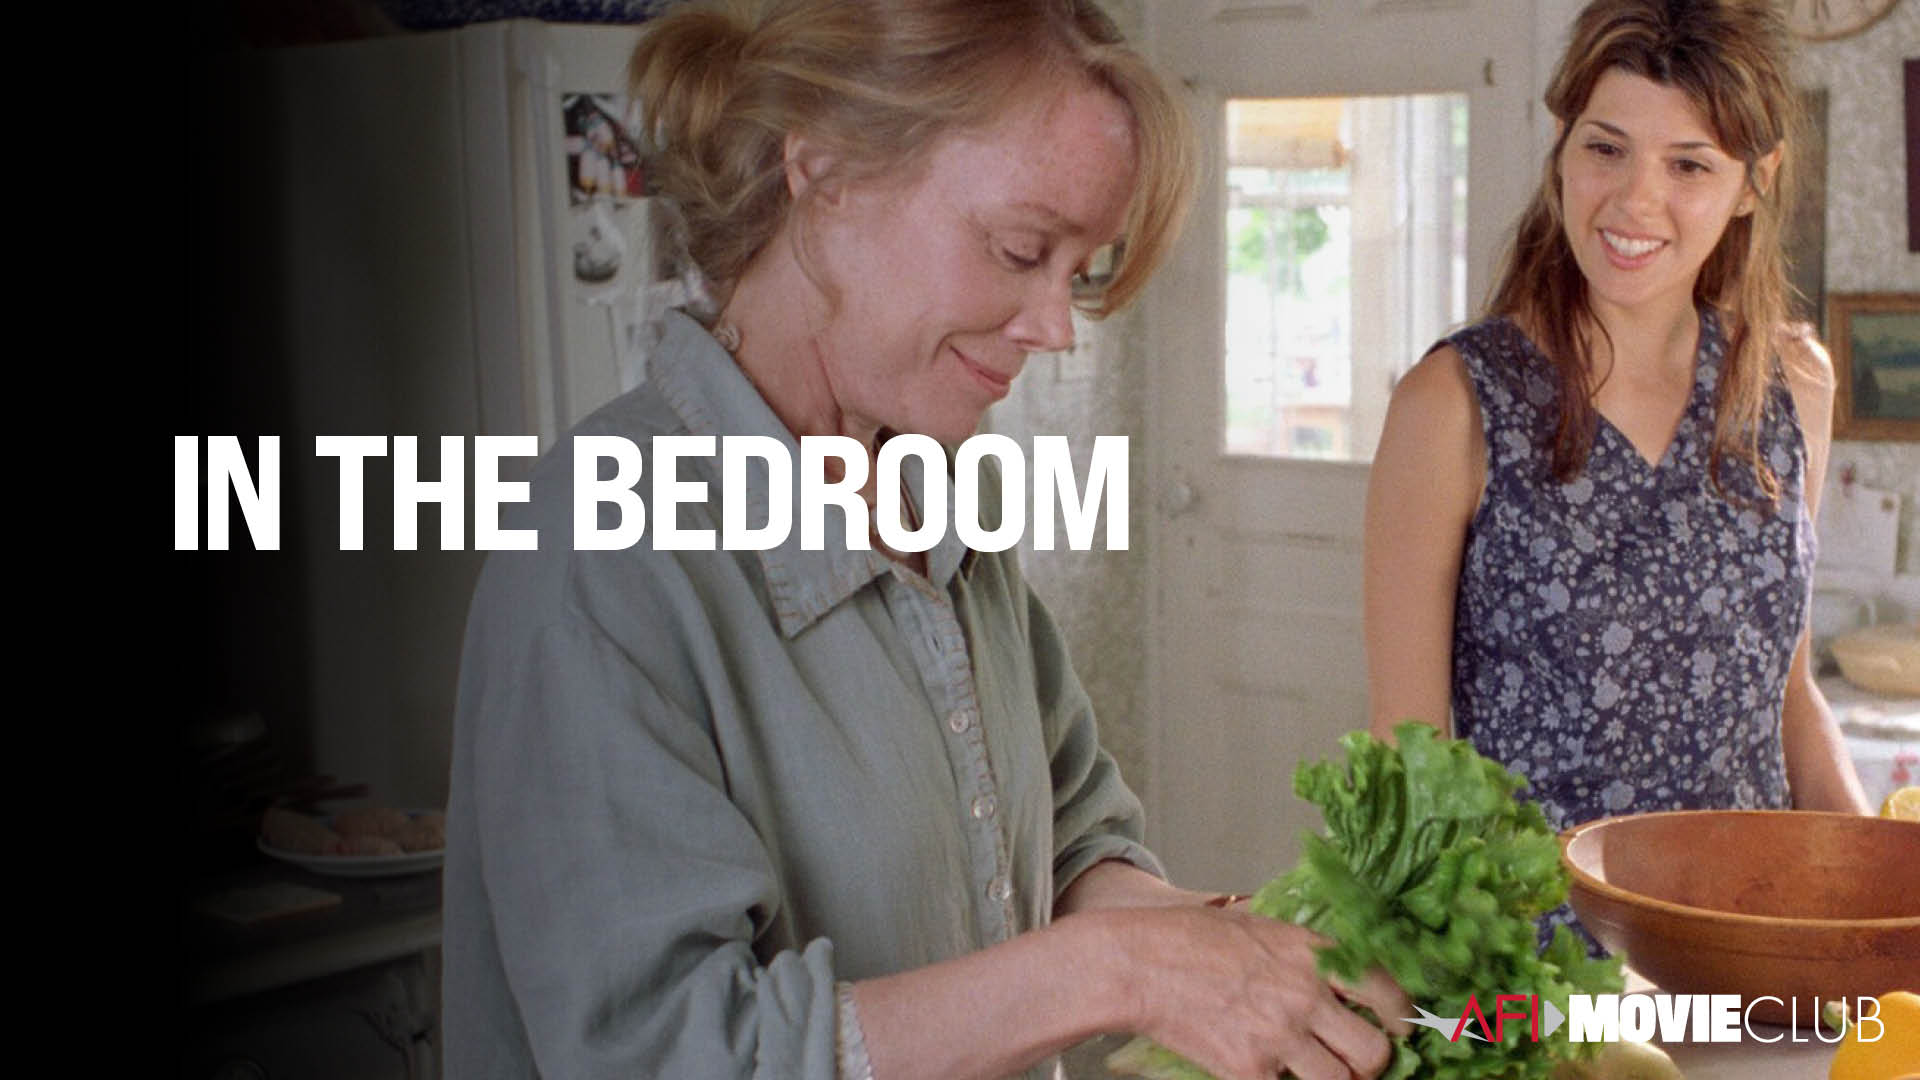 In the Bedroom Film Still - Sissy Spacek and Marisa Tomei